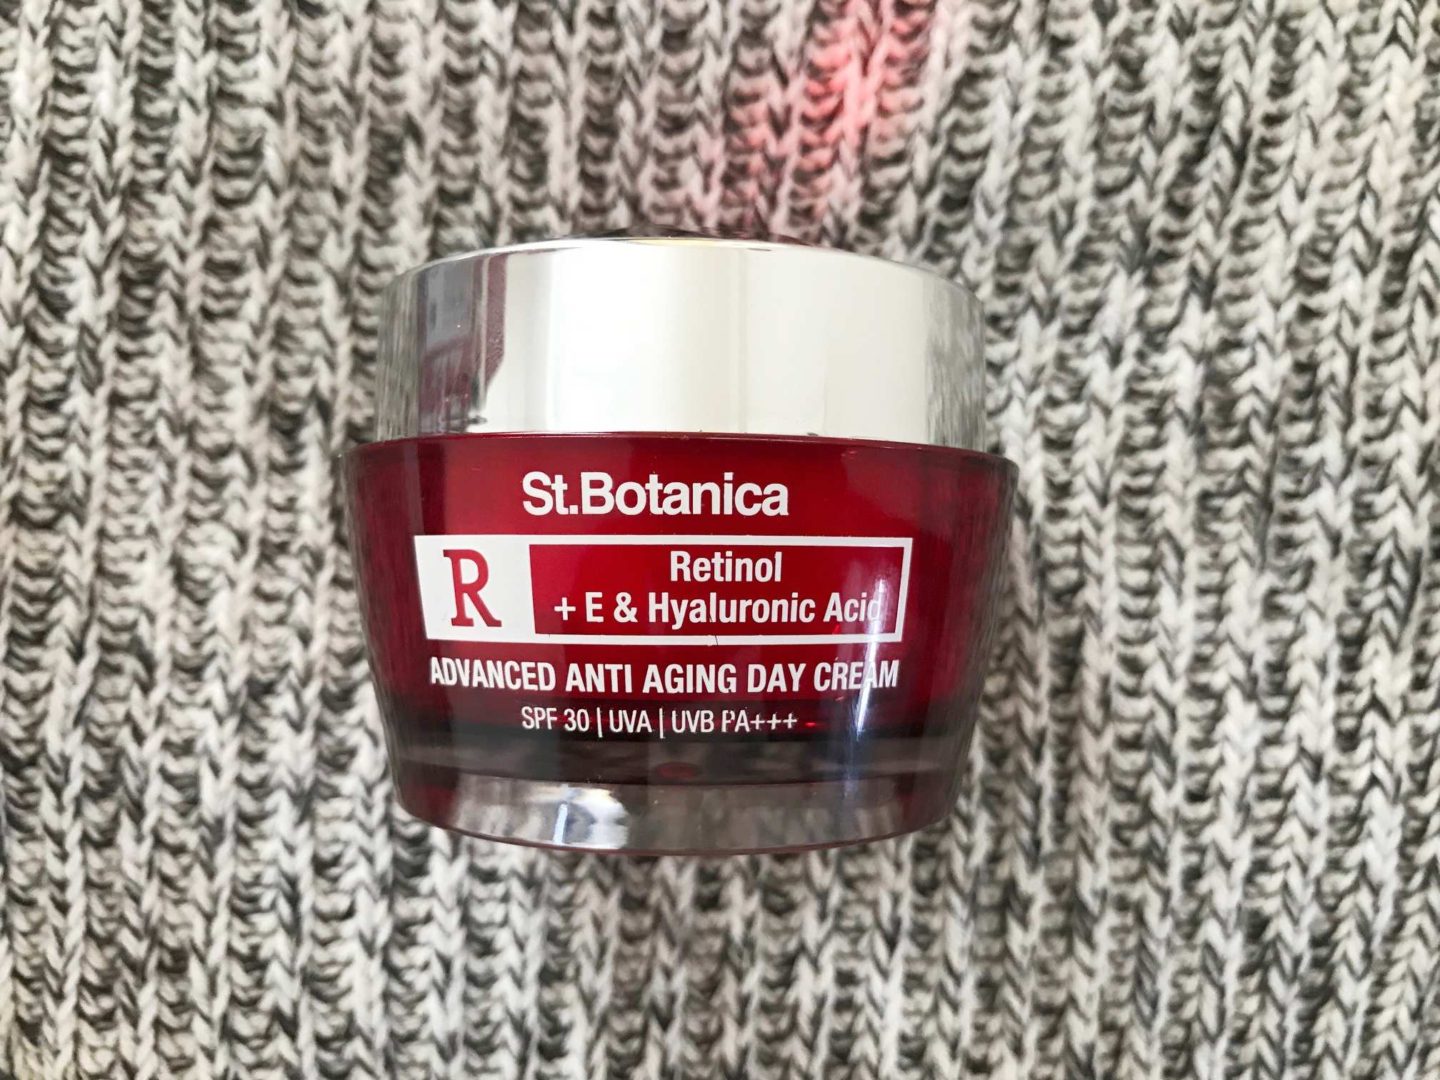 St.Botanica Retinol Anti-Aging Day Cream Review